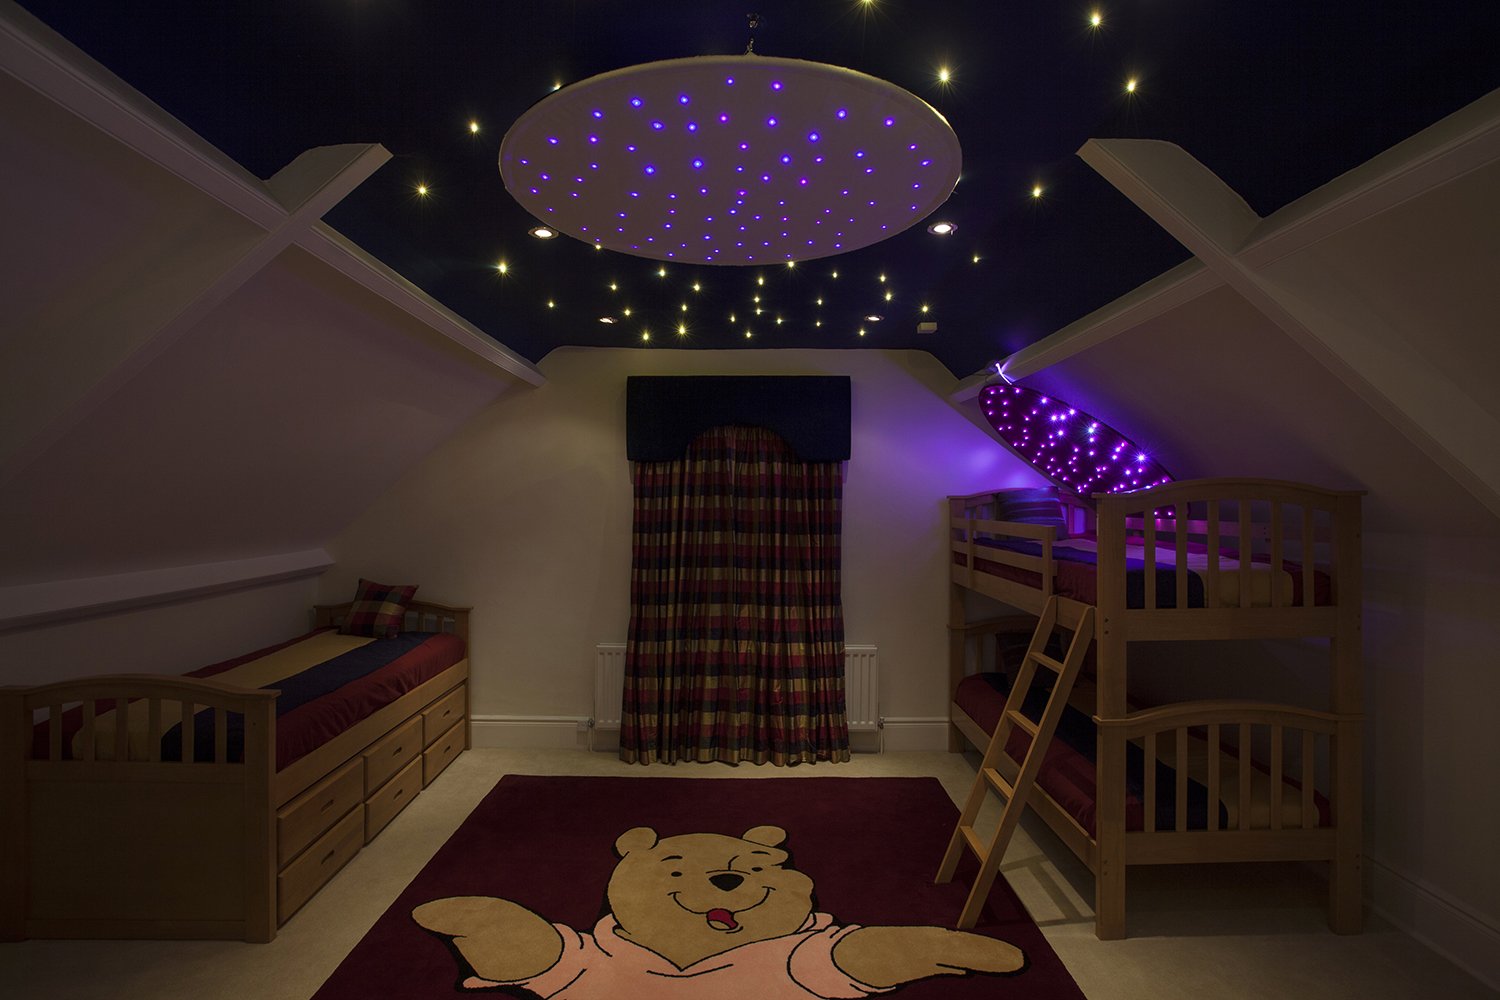 Потолок из гипсокартона в детскую: фото и видео красивых конструкций для комнаты девочки и мальчика